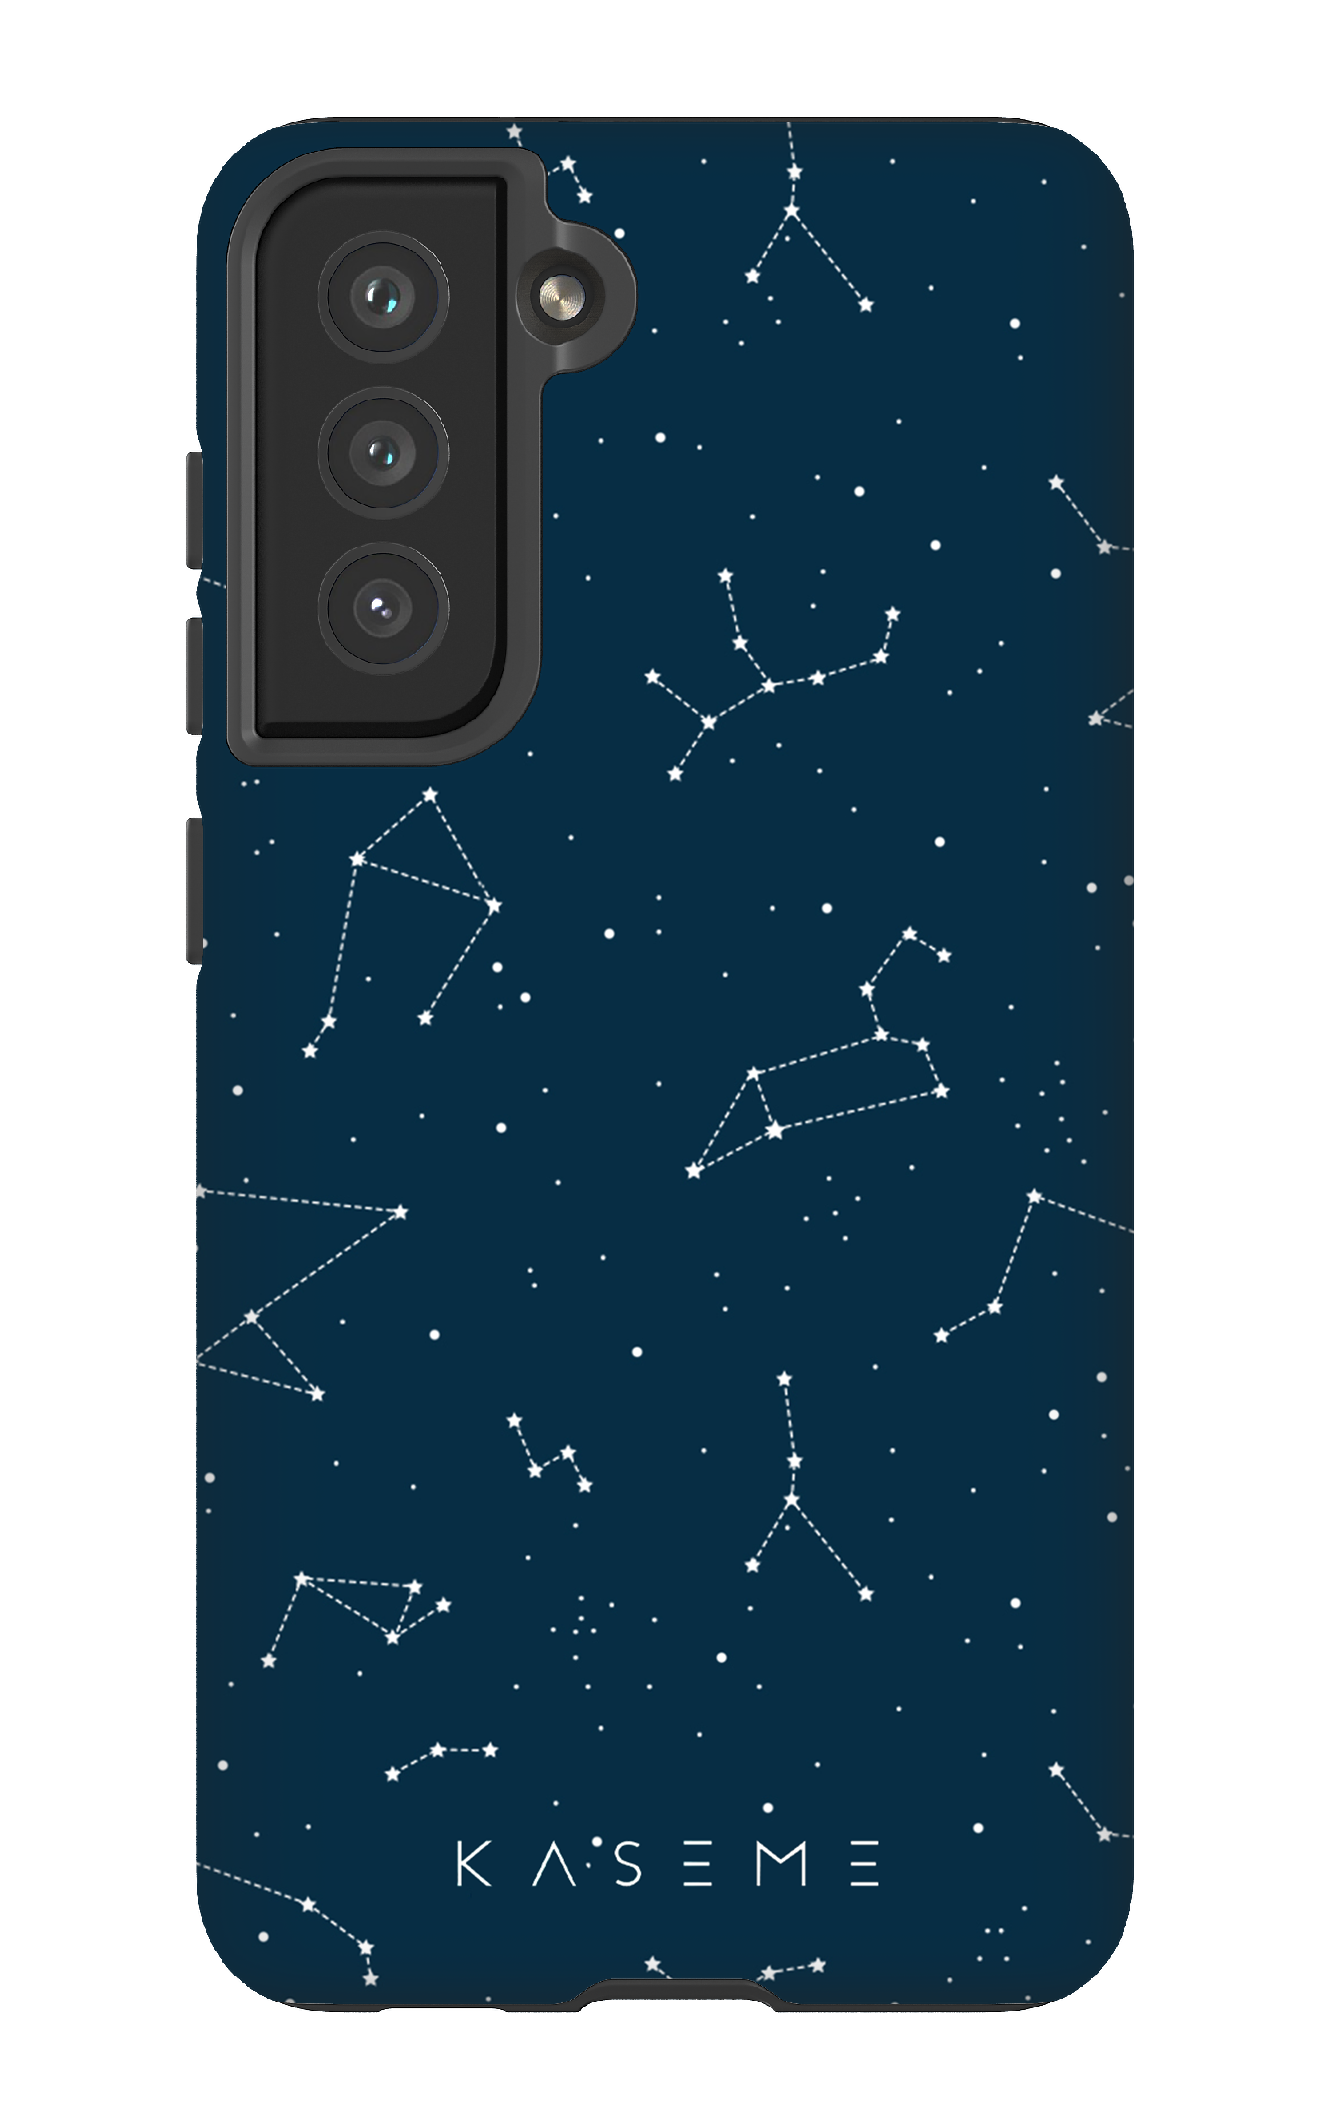 Cosmos - Galaxy S21FE